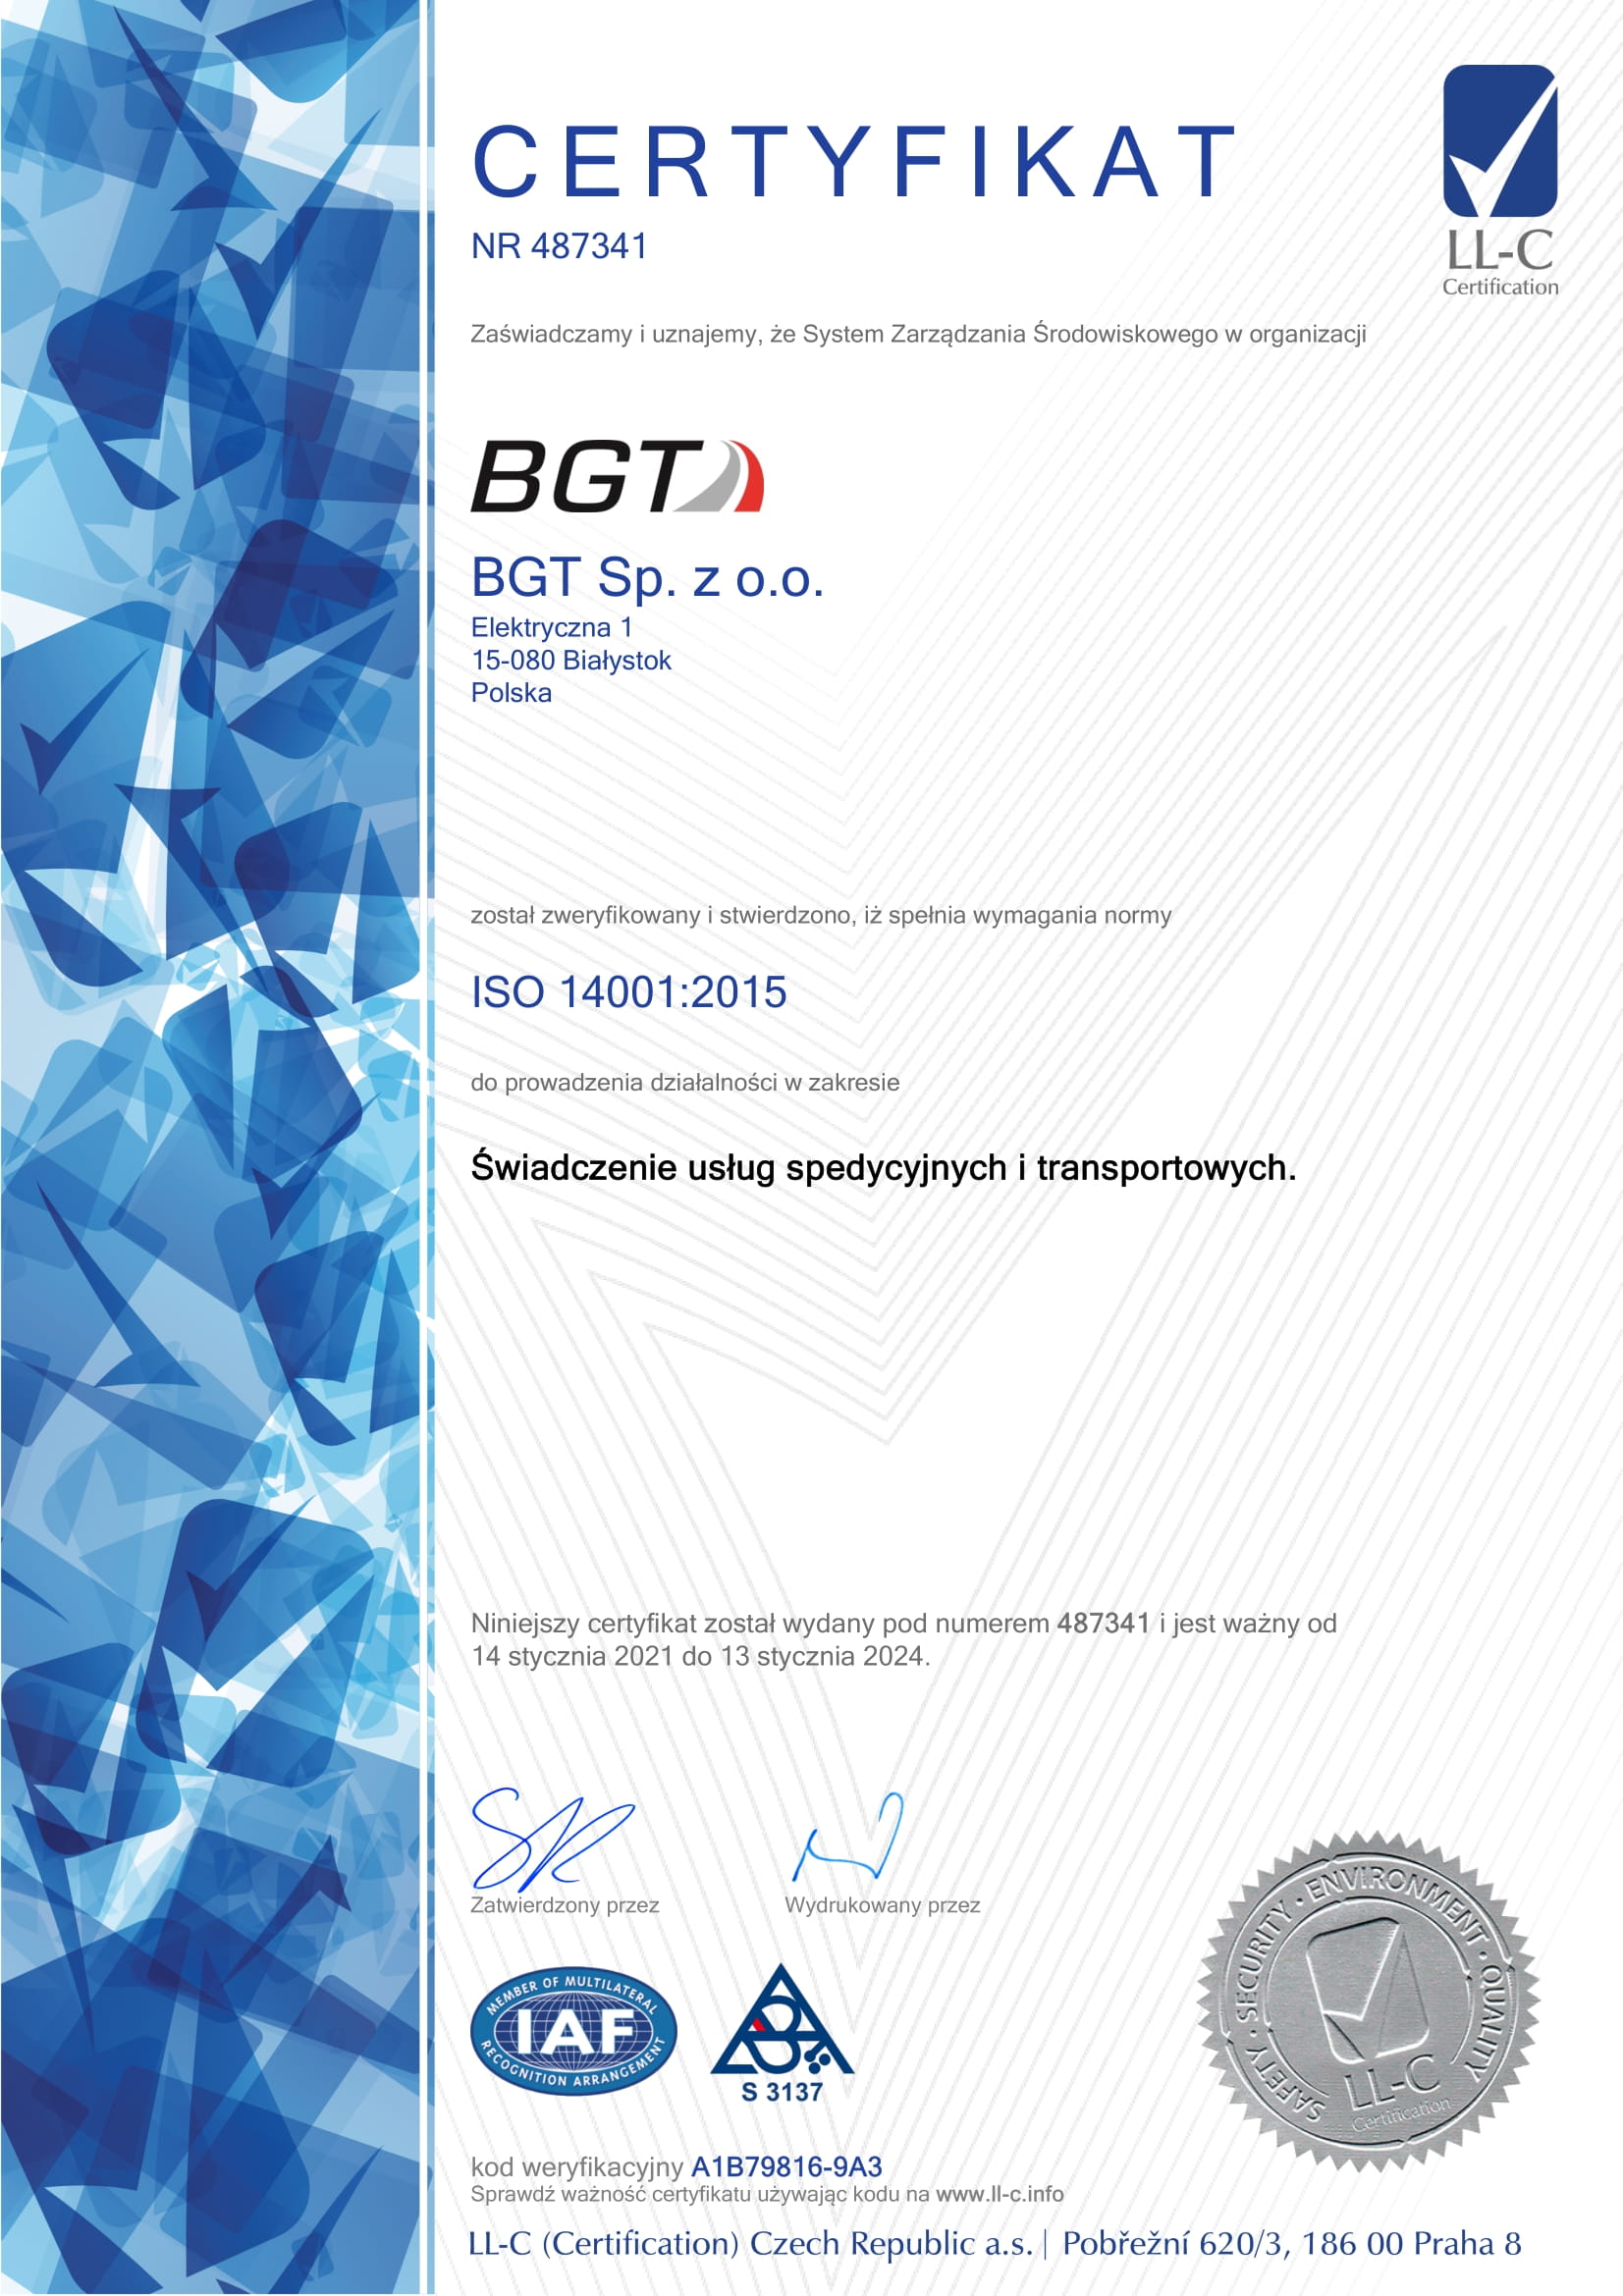 BGT сертификат iso 14001